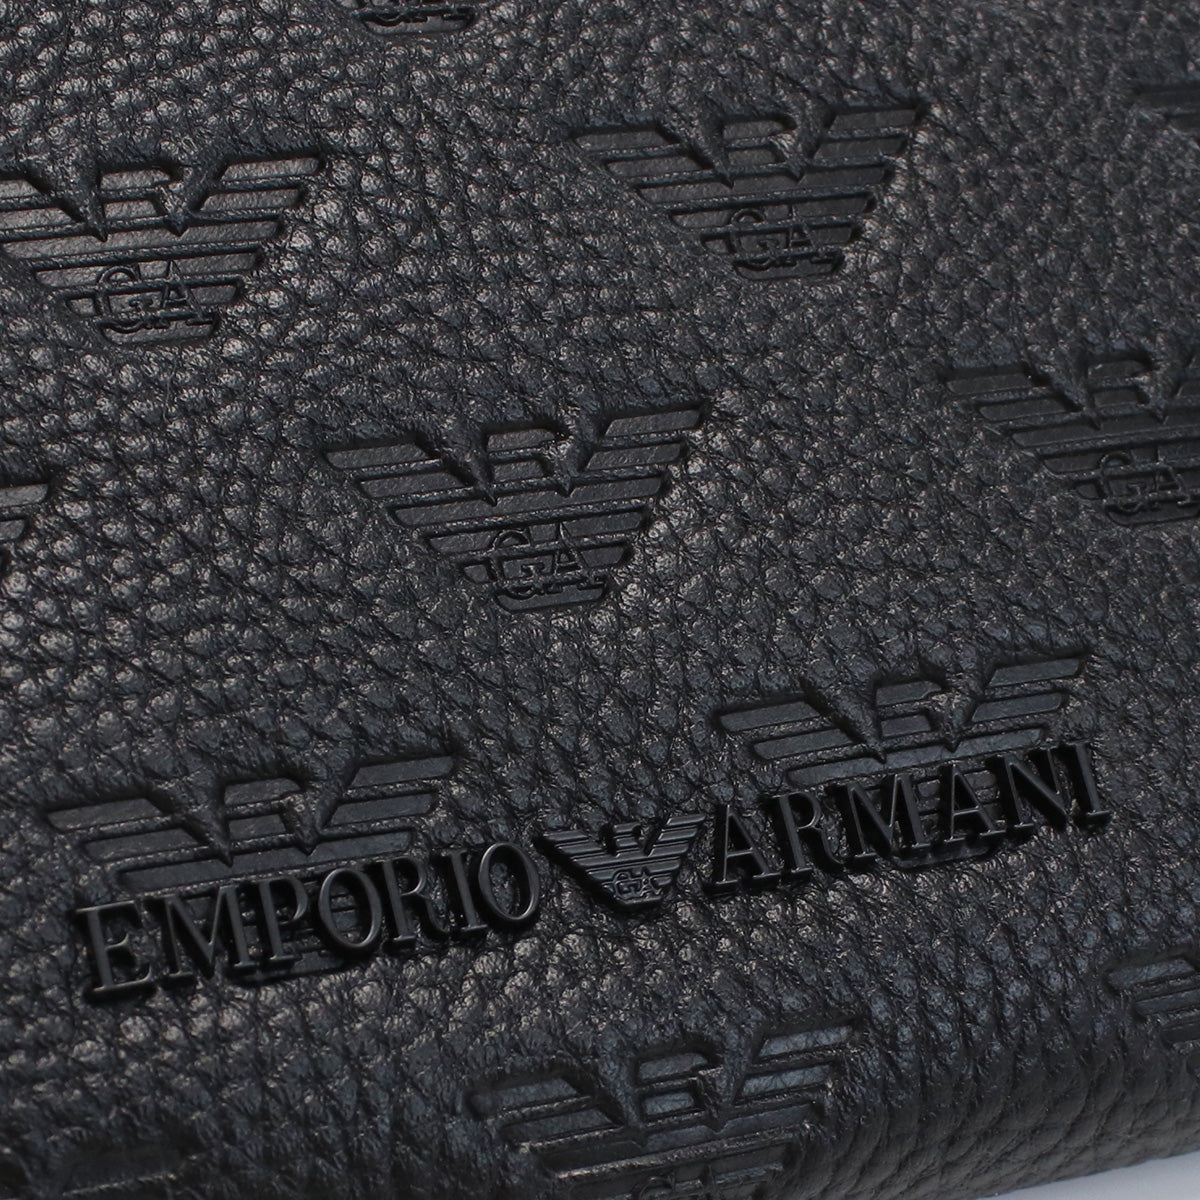 Emporio Armani エンポリオ・アルマーニ YEME49 長財布ラウンドファスナー BLACK ブラック メンズ